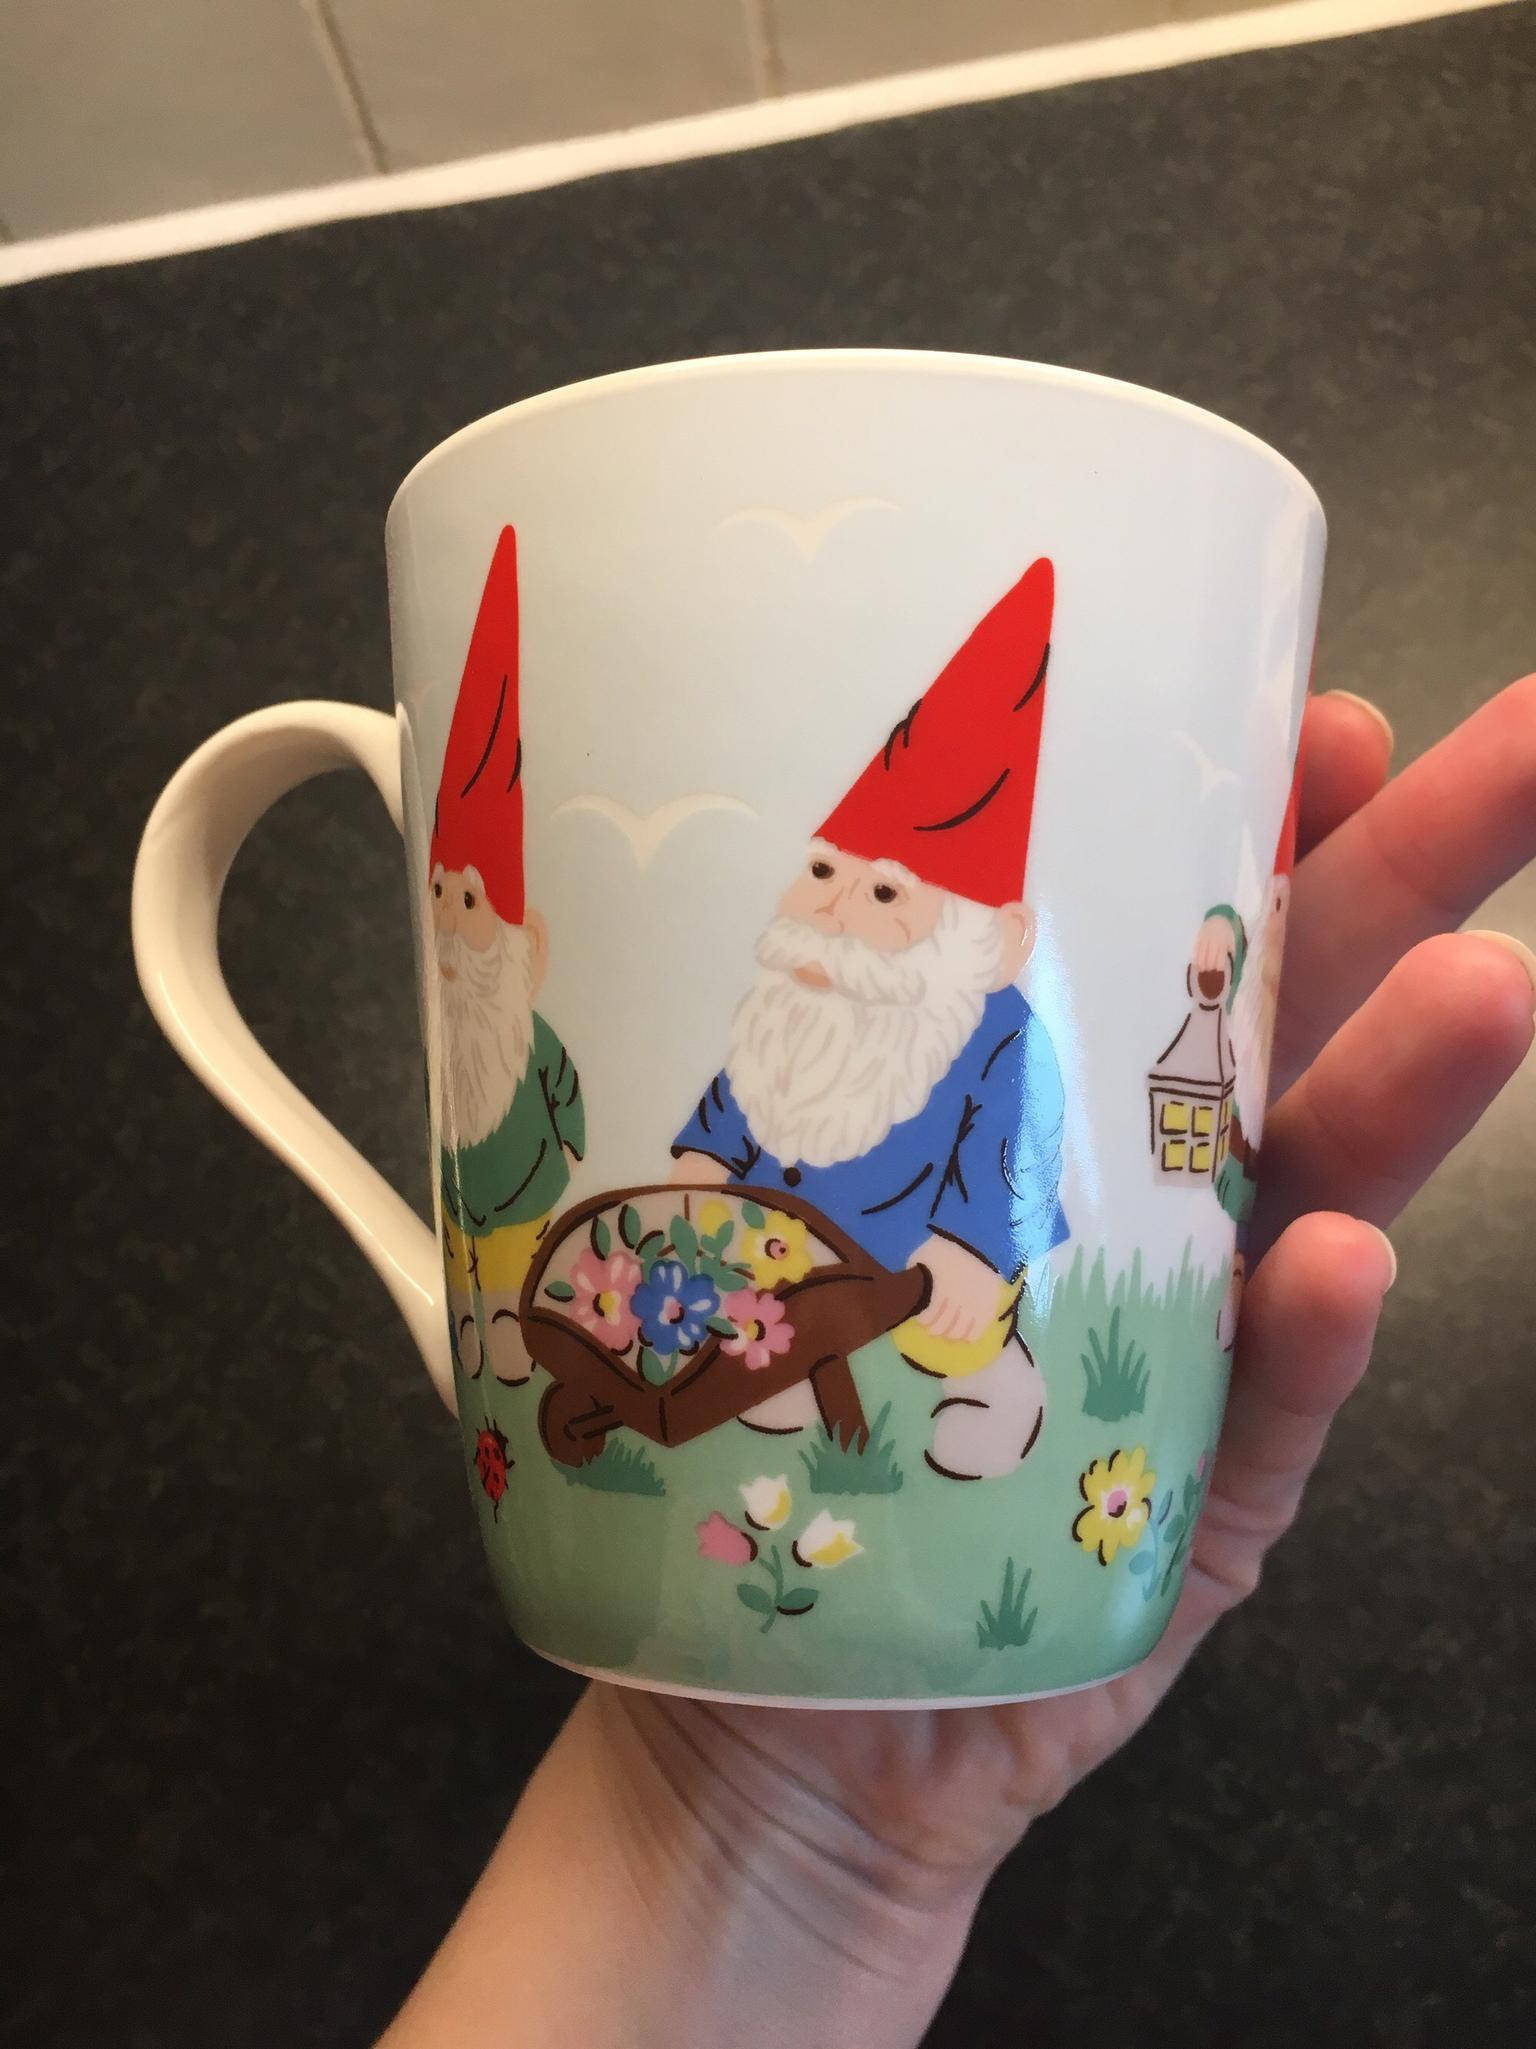 Cath Kidston Gnome Mug in KT13 